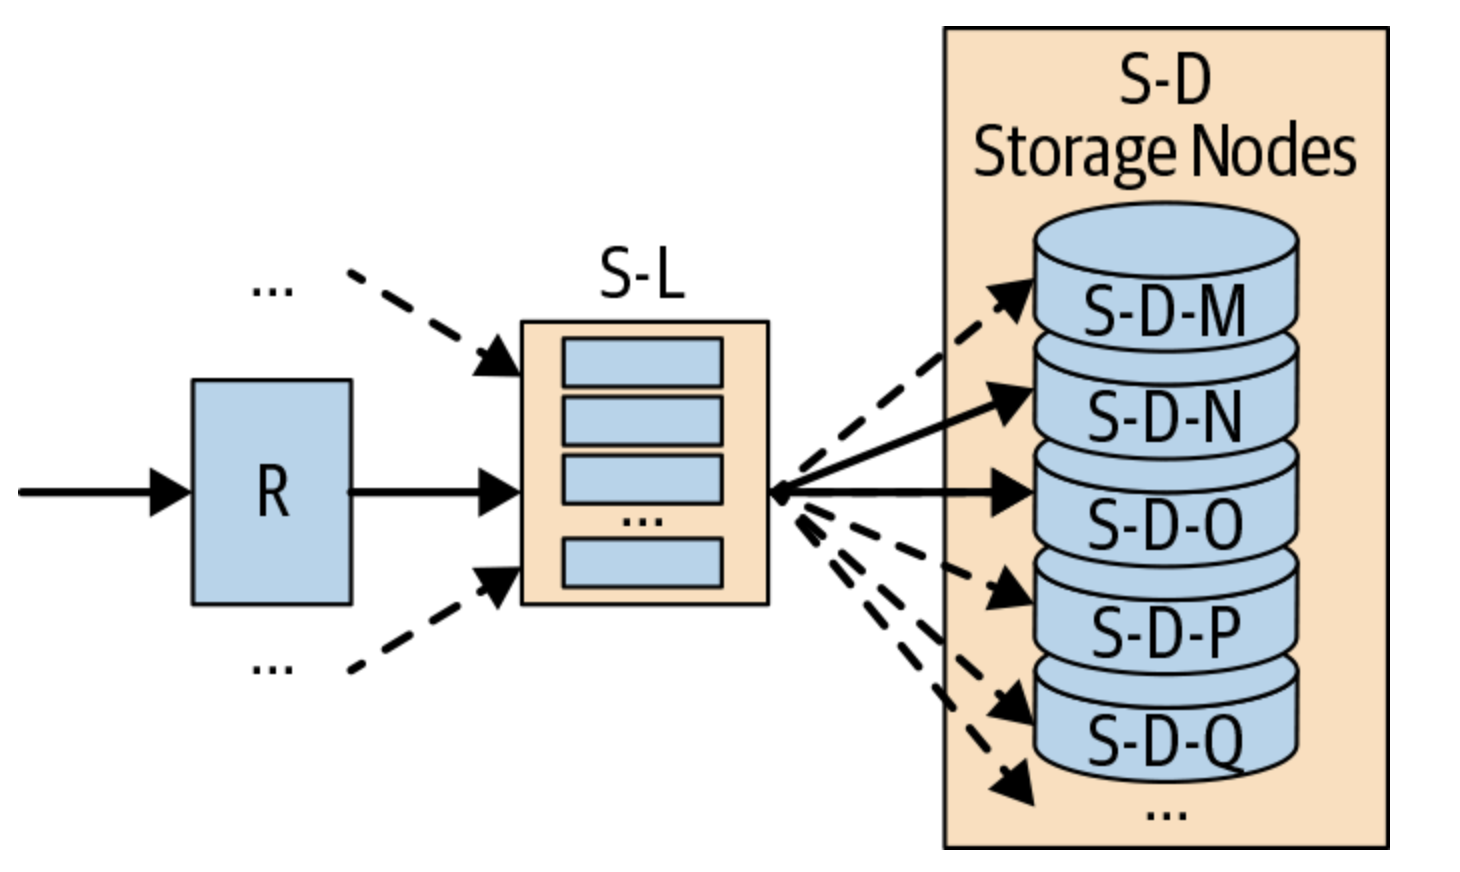 autoscaling-storage